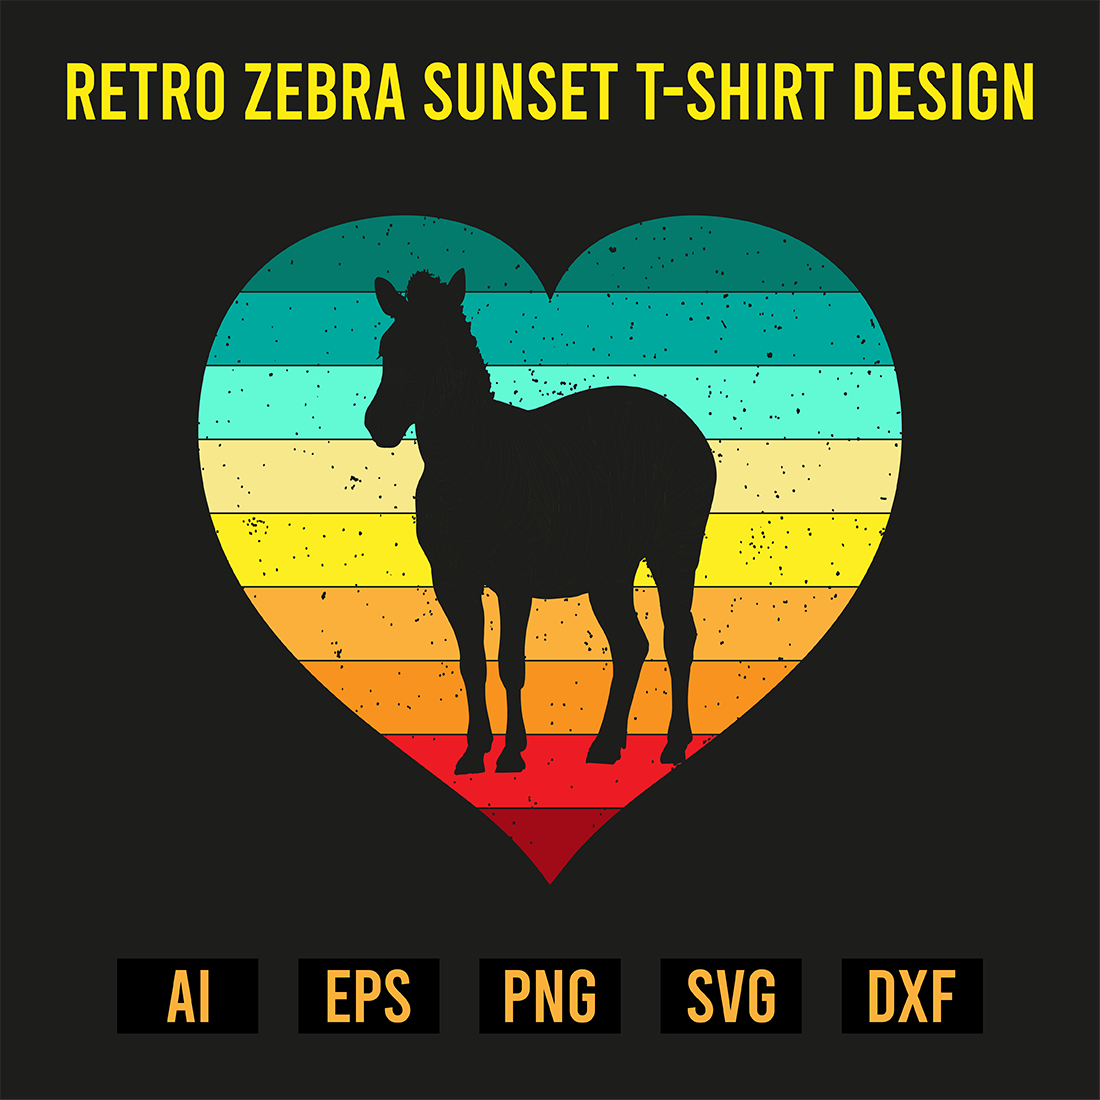 Retro Zebra Sunset T-Shirt Design preview image.